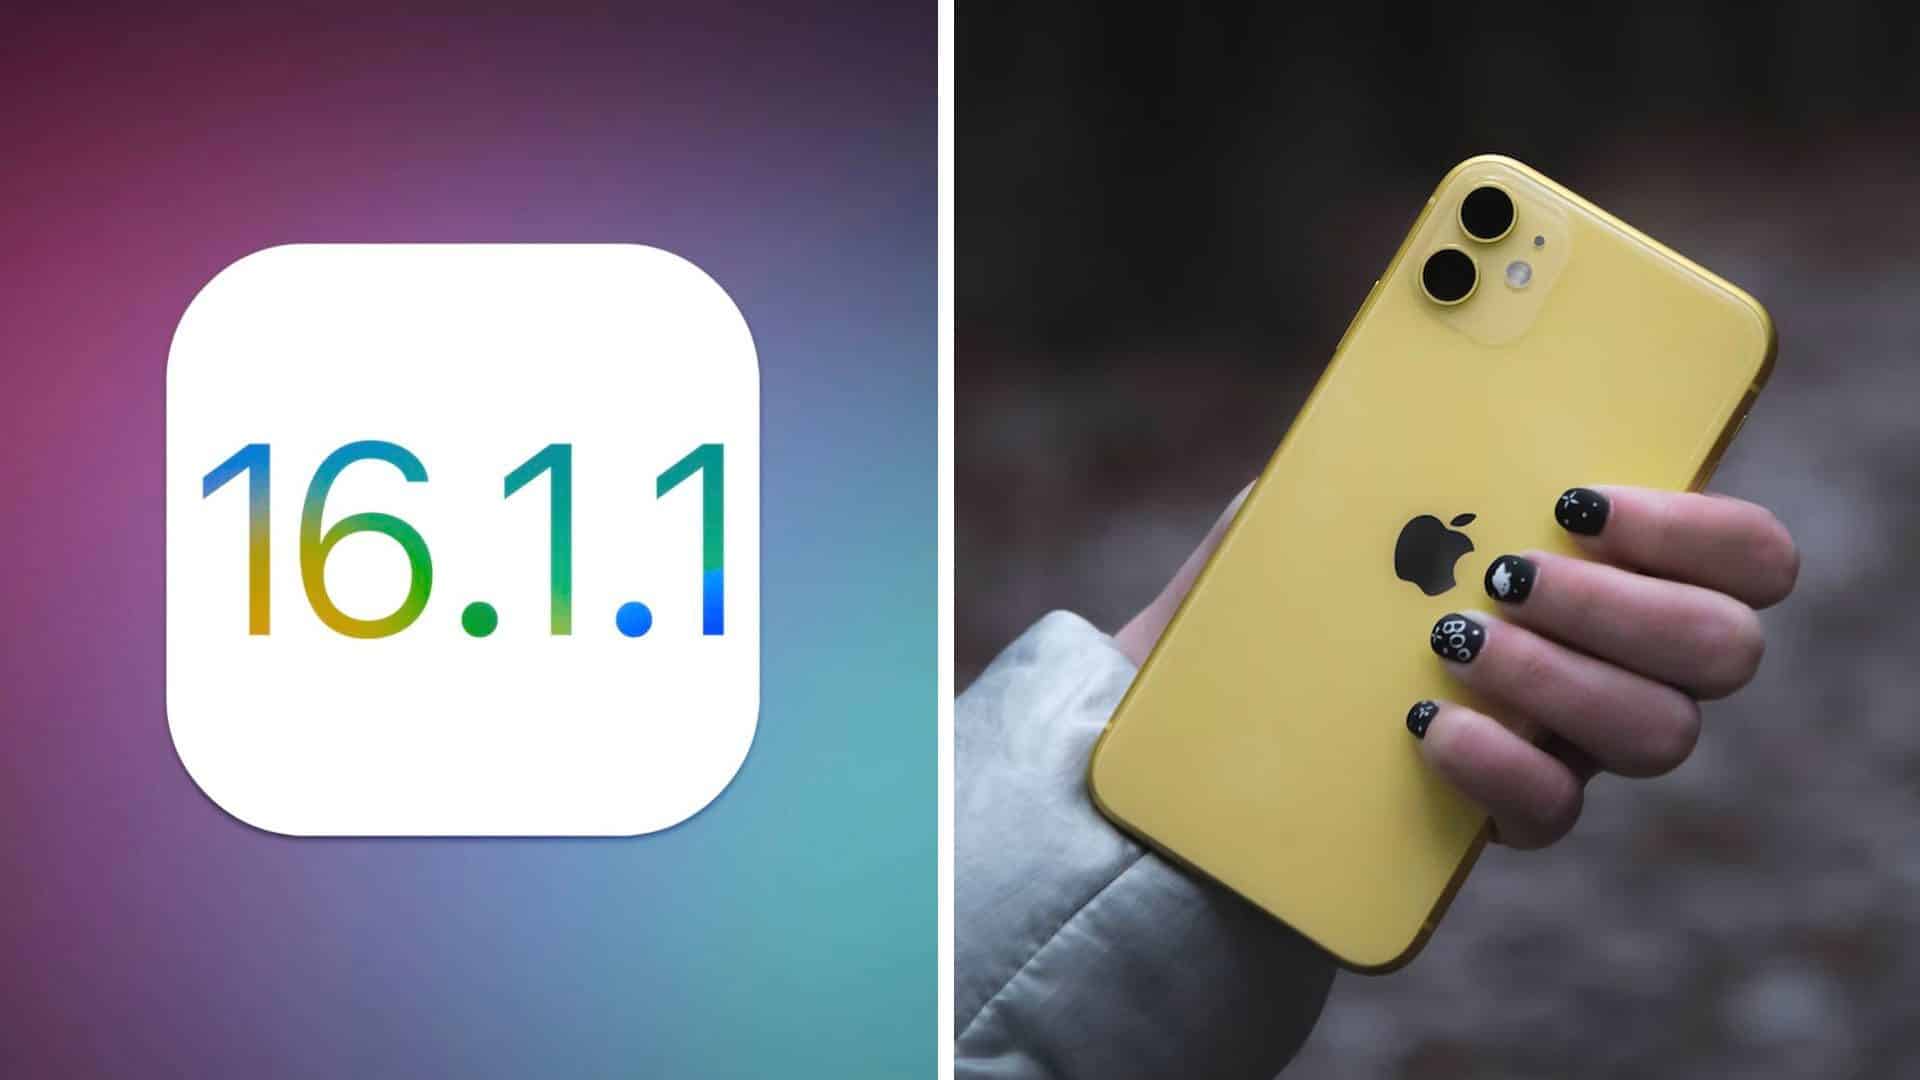 iOS 16.1.1 iPhone 11